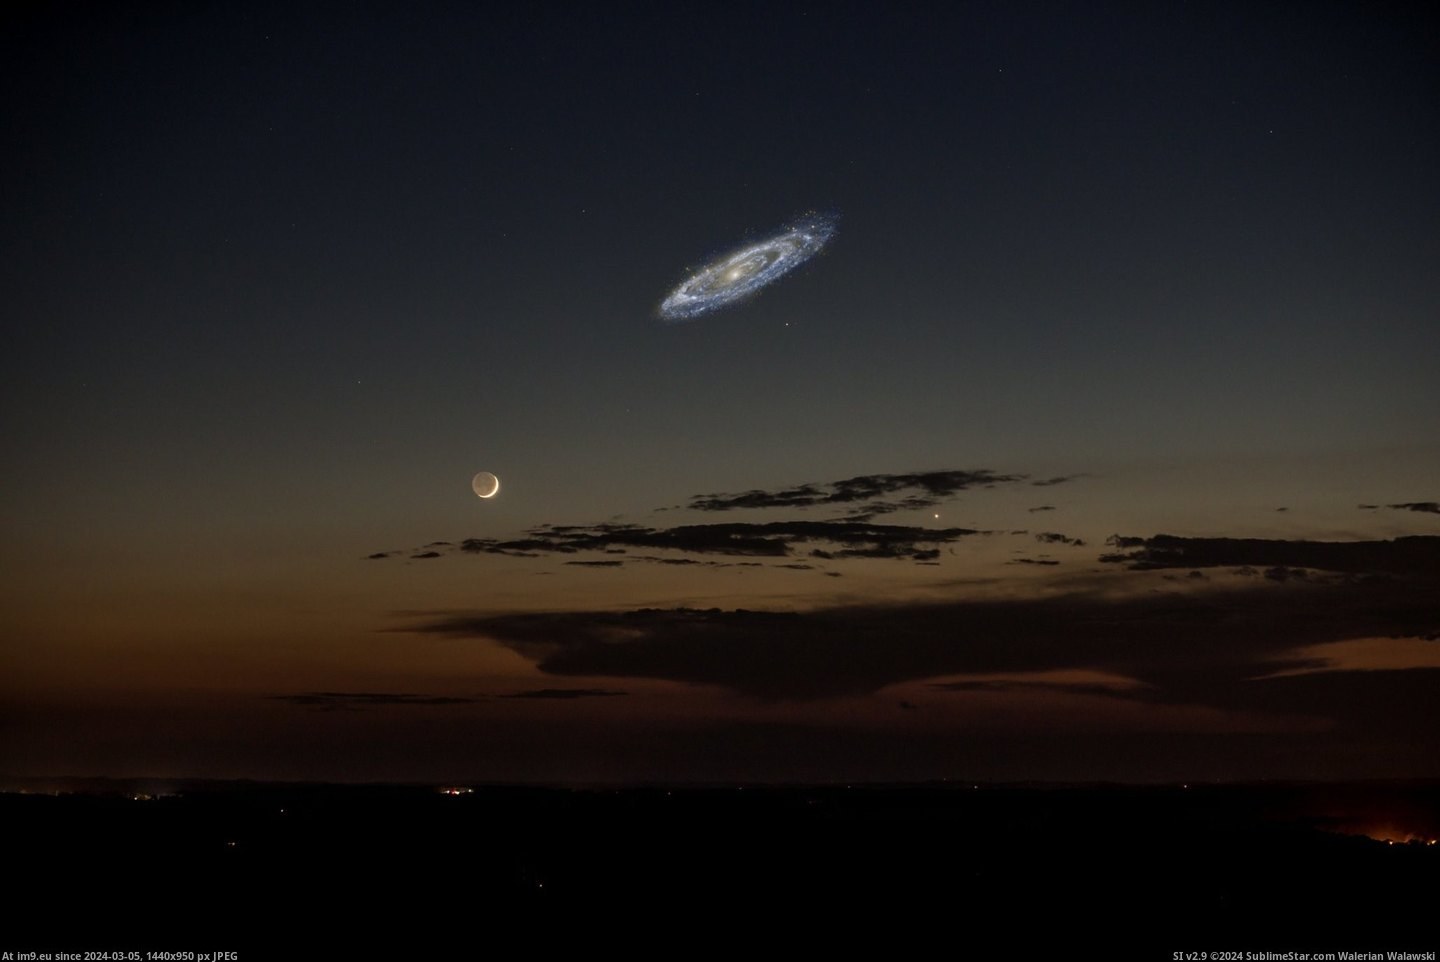 #Size #Andromeda #Brighter #Actual [Pics] Andromeda's actual size if it were brighter Pic. (Bild von album My r/PICS favs))